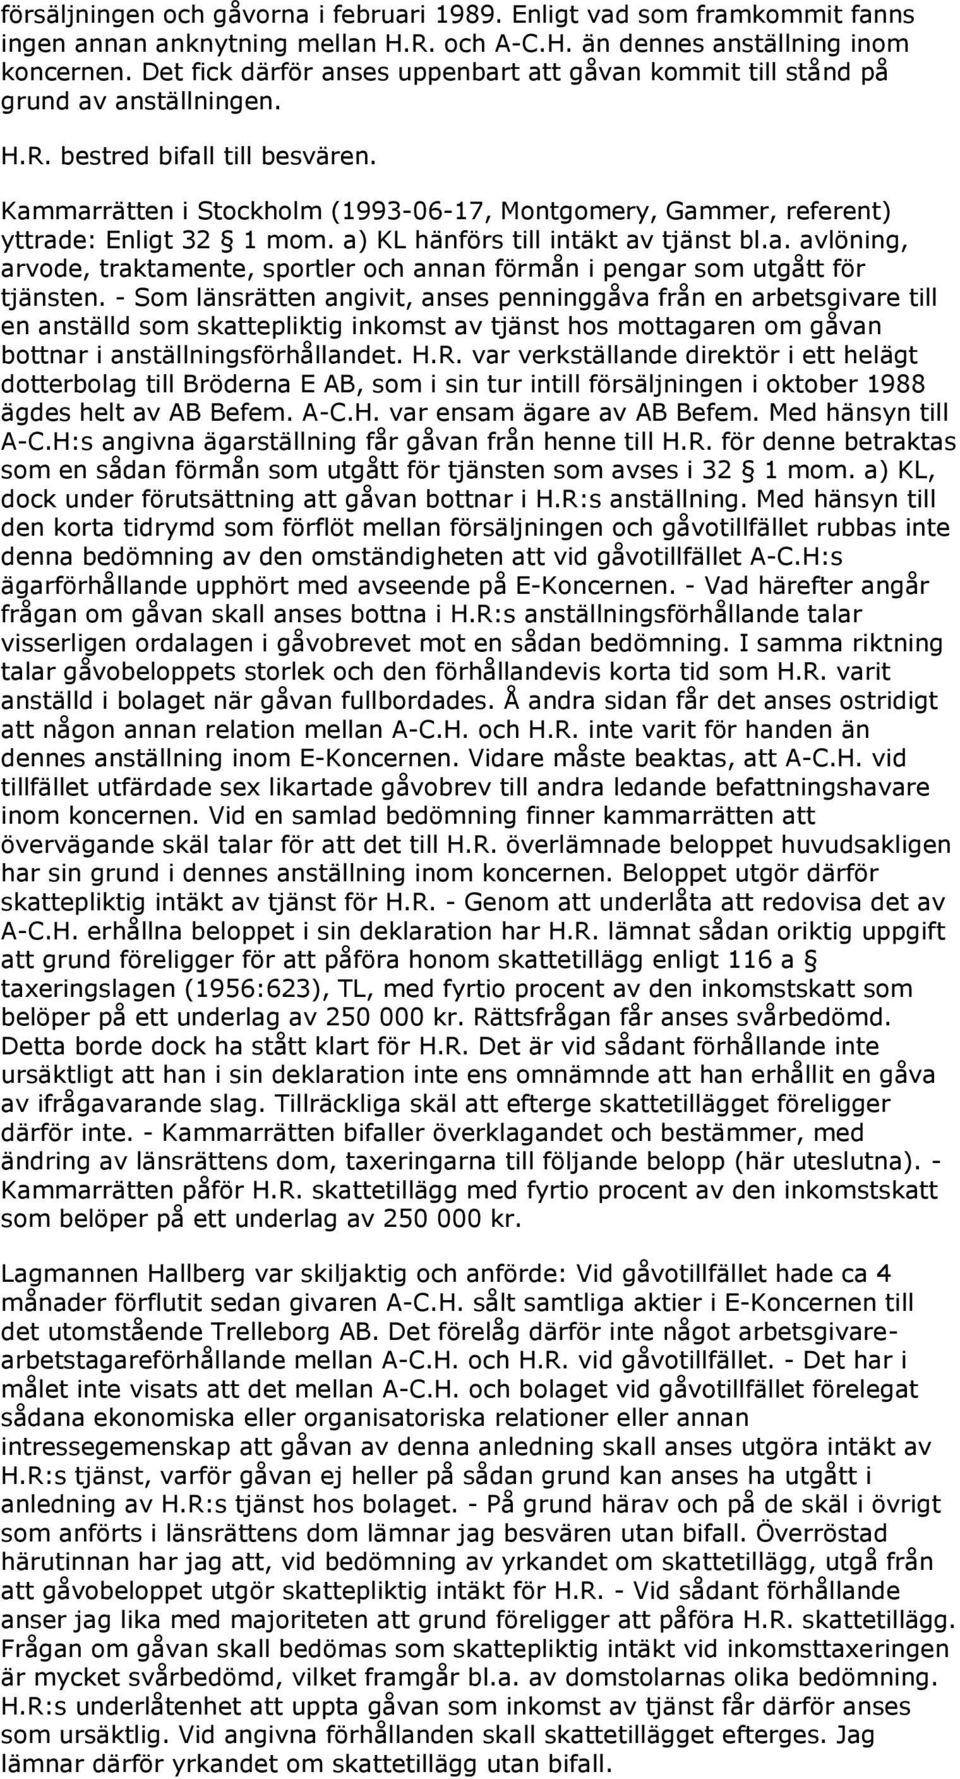 Kammarrätten i Stockholm (1993-06-17, Montgomery, Gammer, referent) yttrade: Enligt 32 1 mom. a) KL hänförs till intäkt av tjänst bl.a. avlöning, arvode, traktamente, sportler och annan förmån i pengar som utgått för tjänsten.